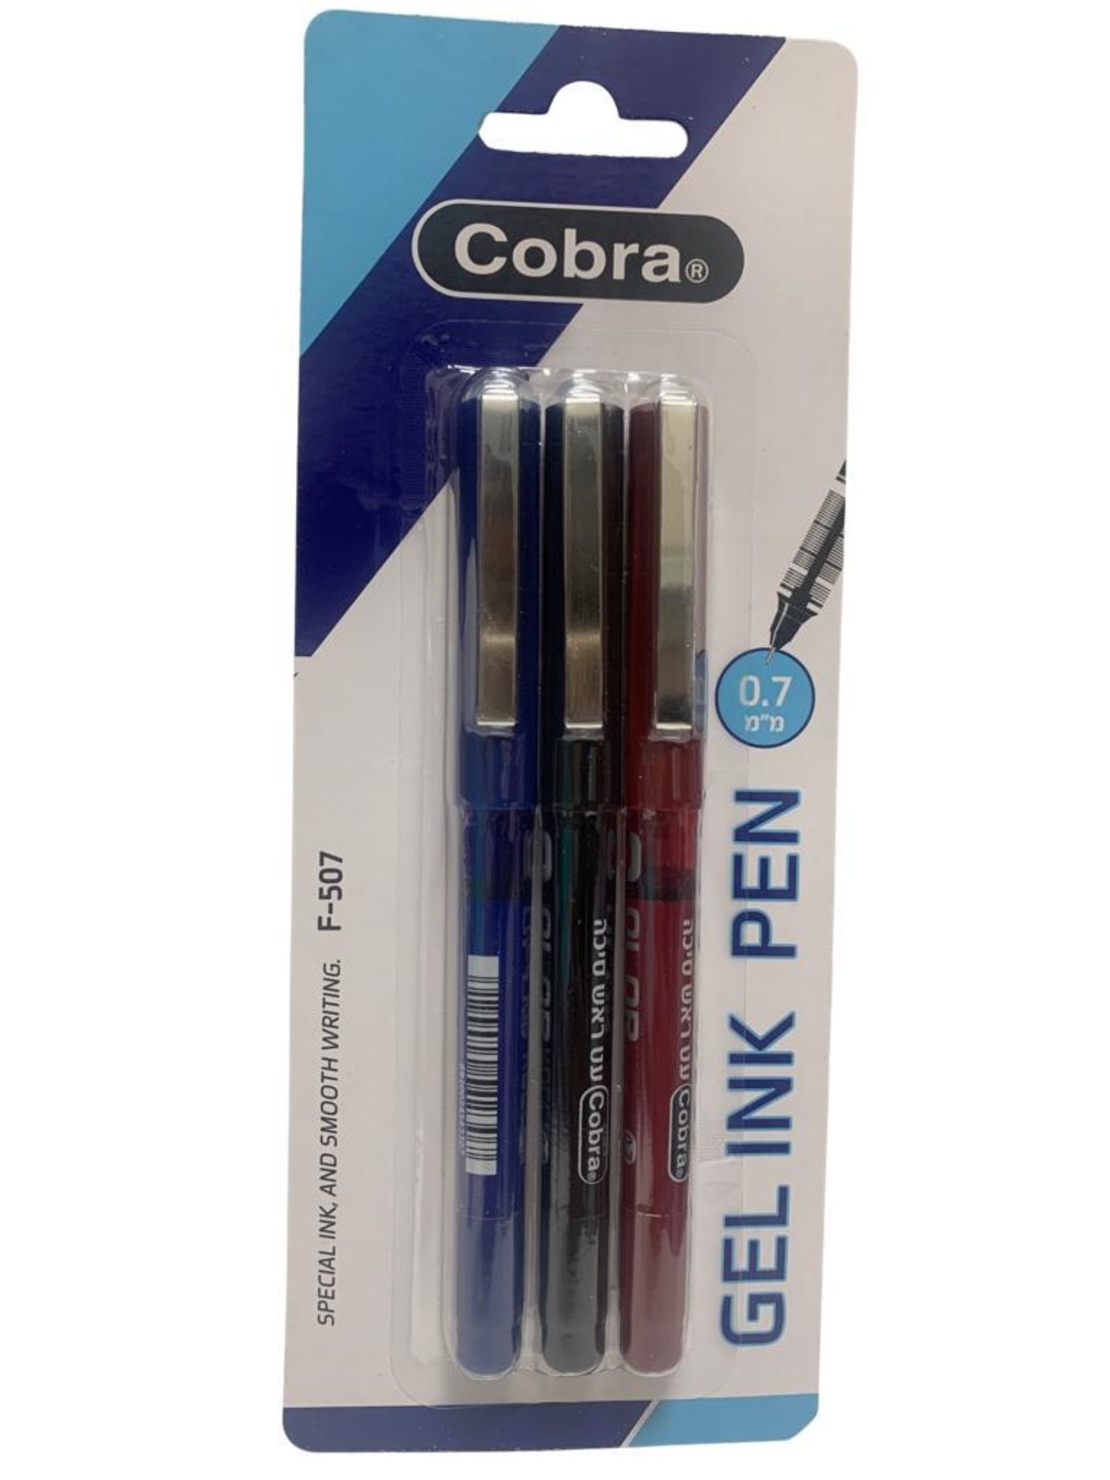 סט שלישית  עט ג'ל 0.7 של cobra f-507